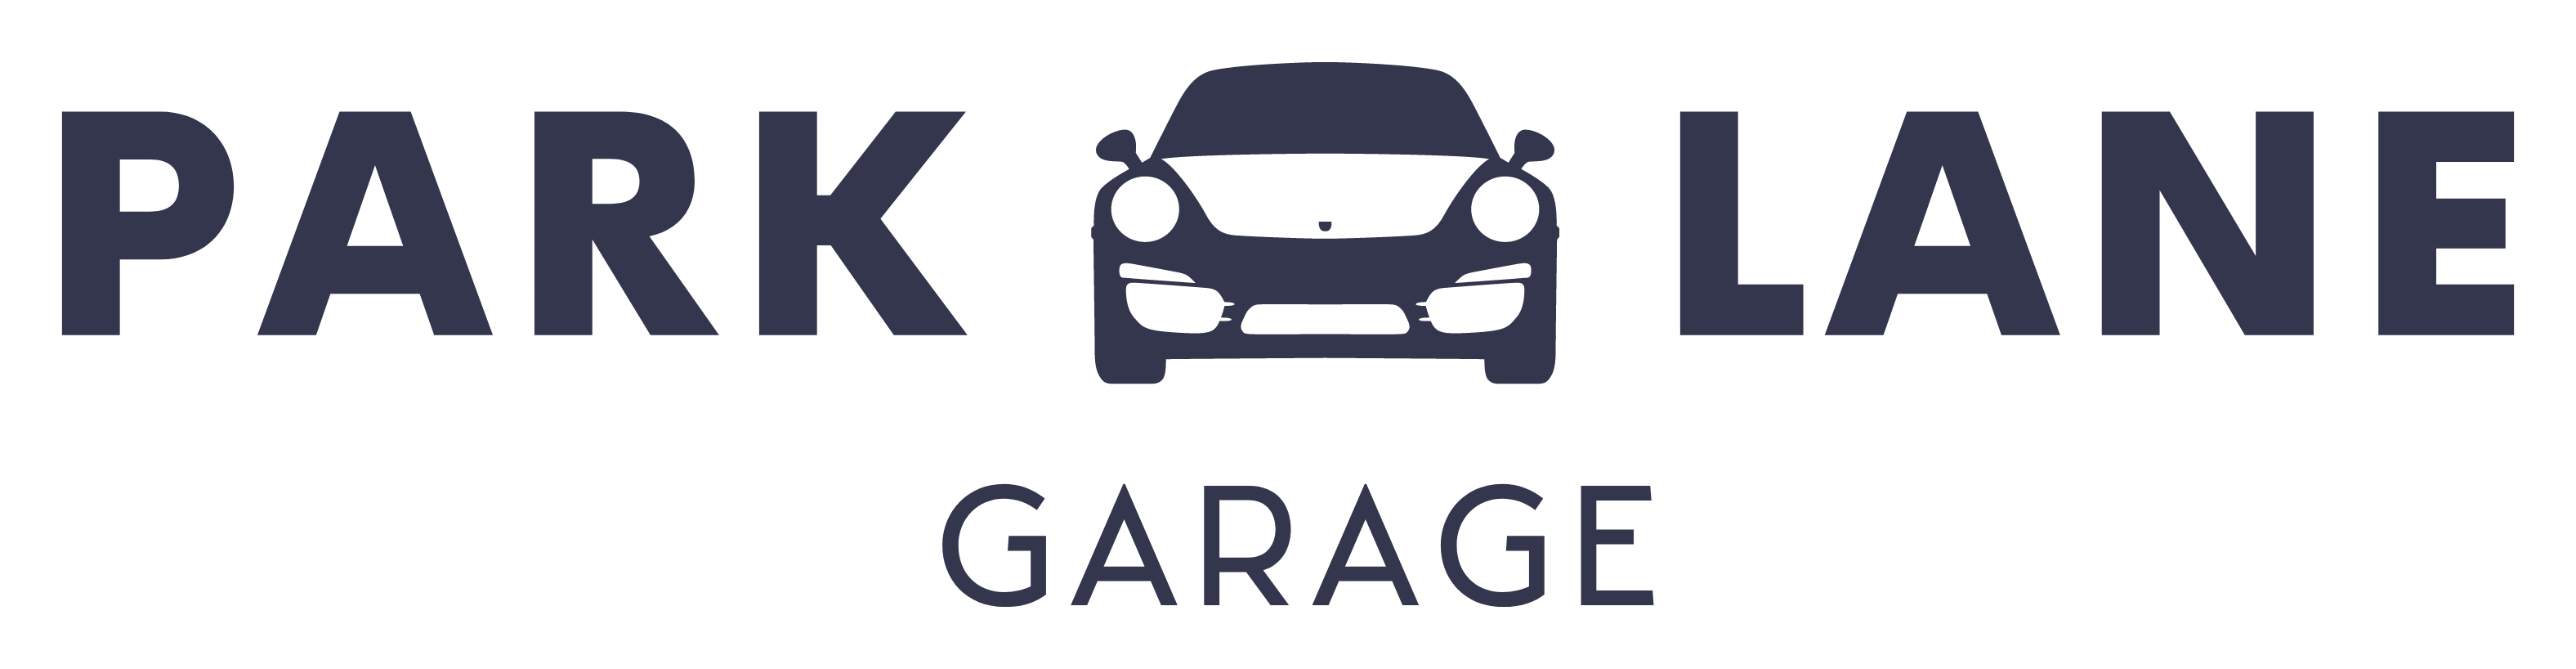 Parklane Garage